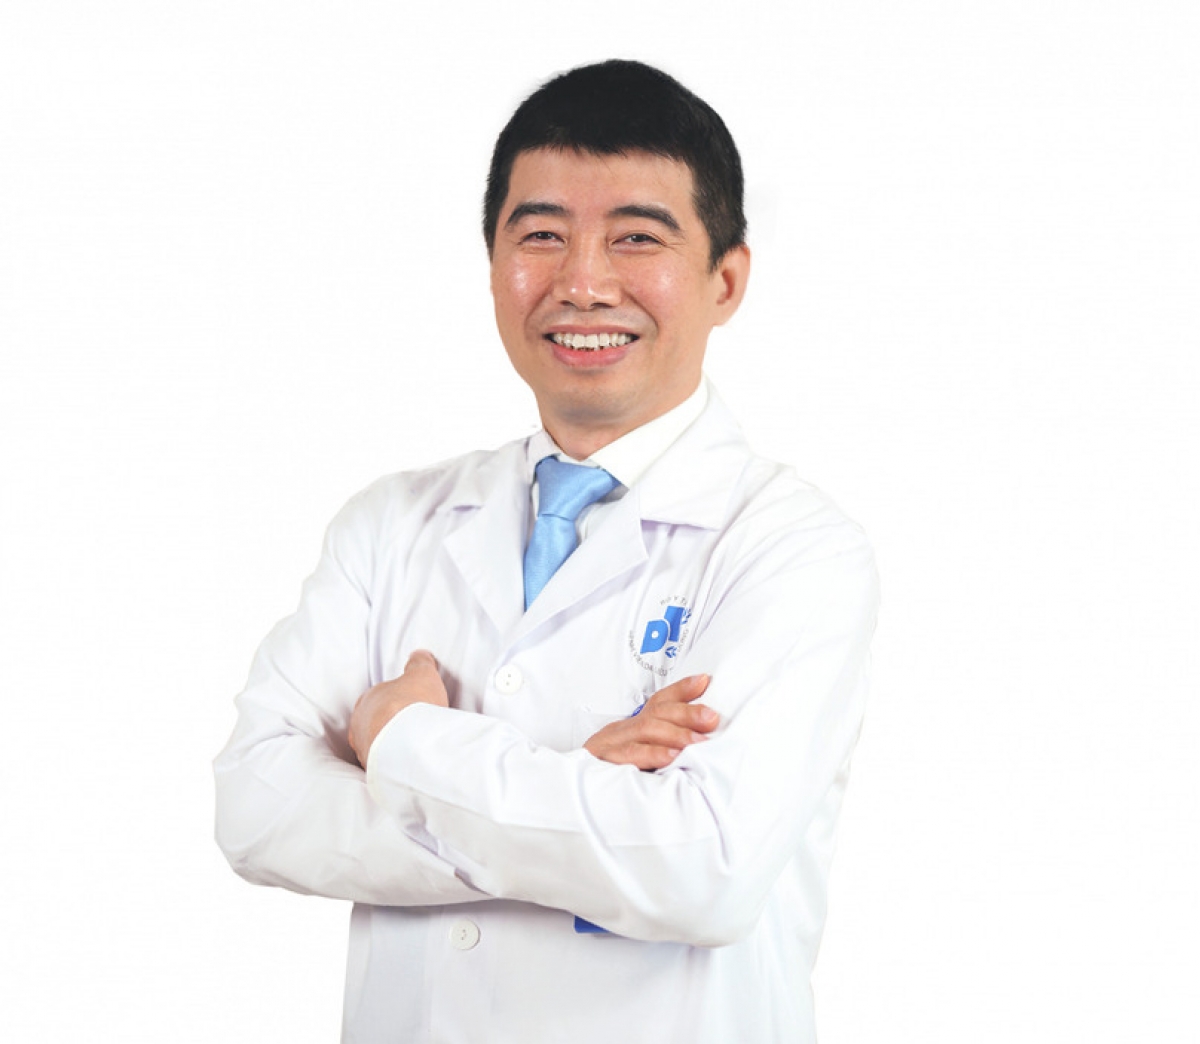 TS-BS Vũ Thái Hà- Trưởng khoa Nghiên cứu và ứng dụng công nghệ tế bào gốc - Bệnh viện Da liễu Trung ương